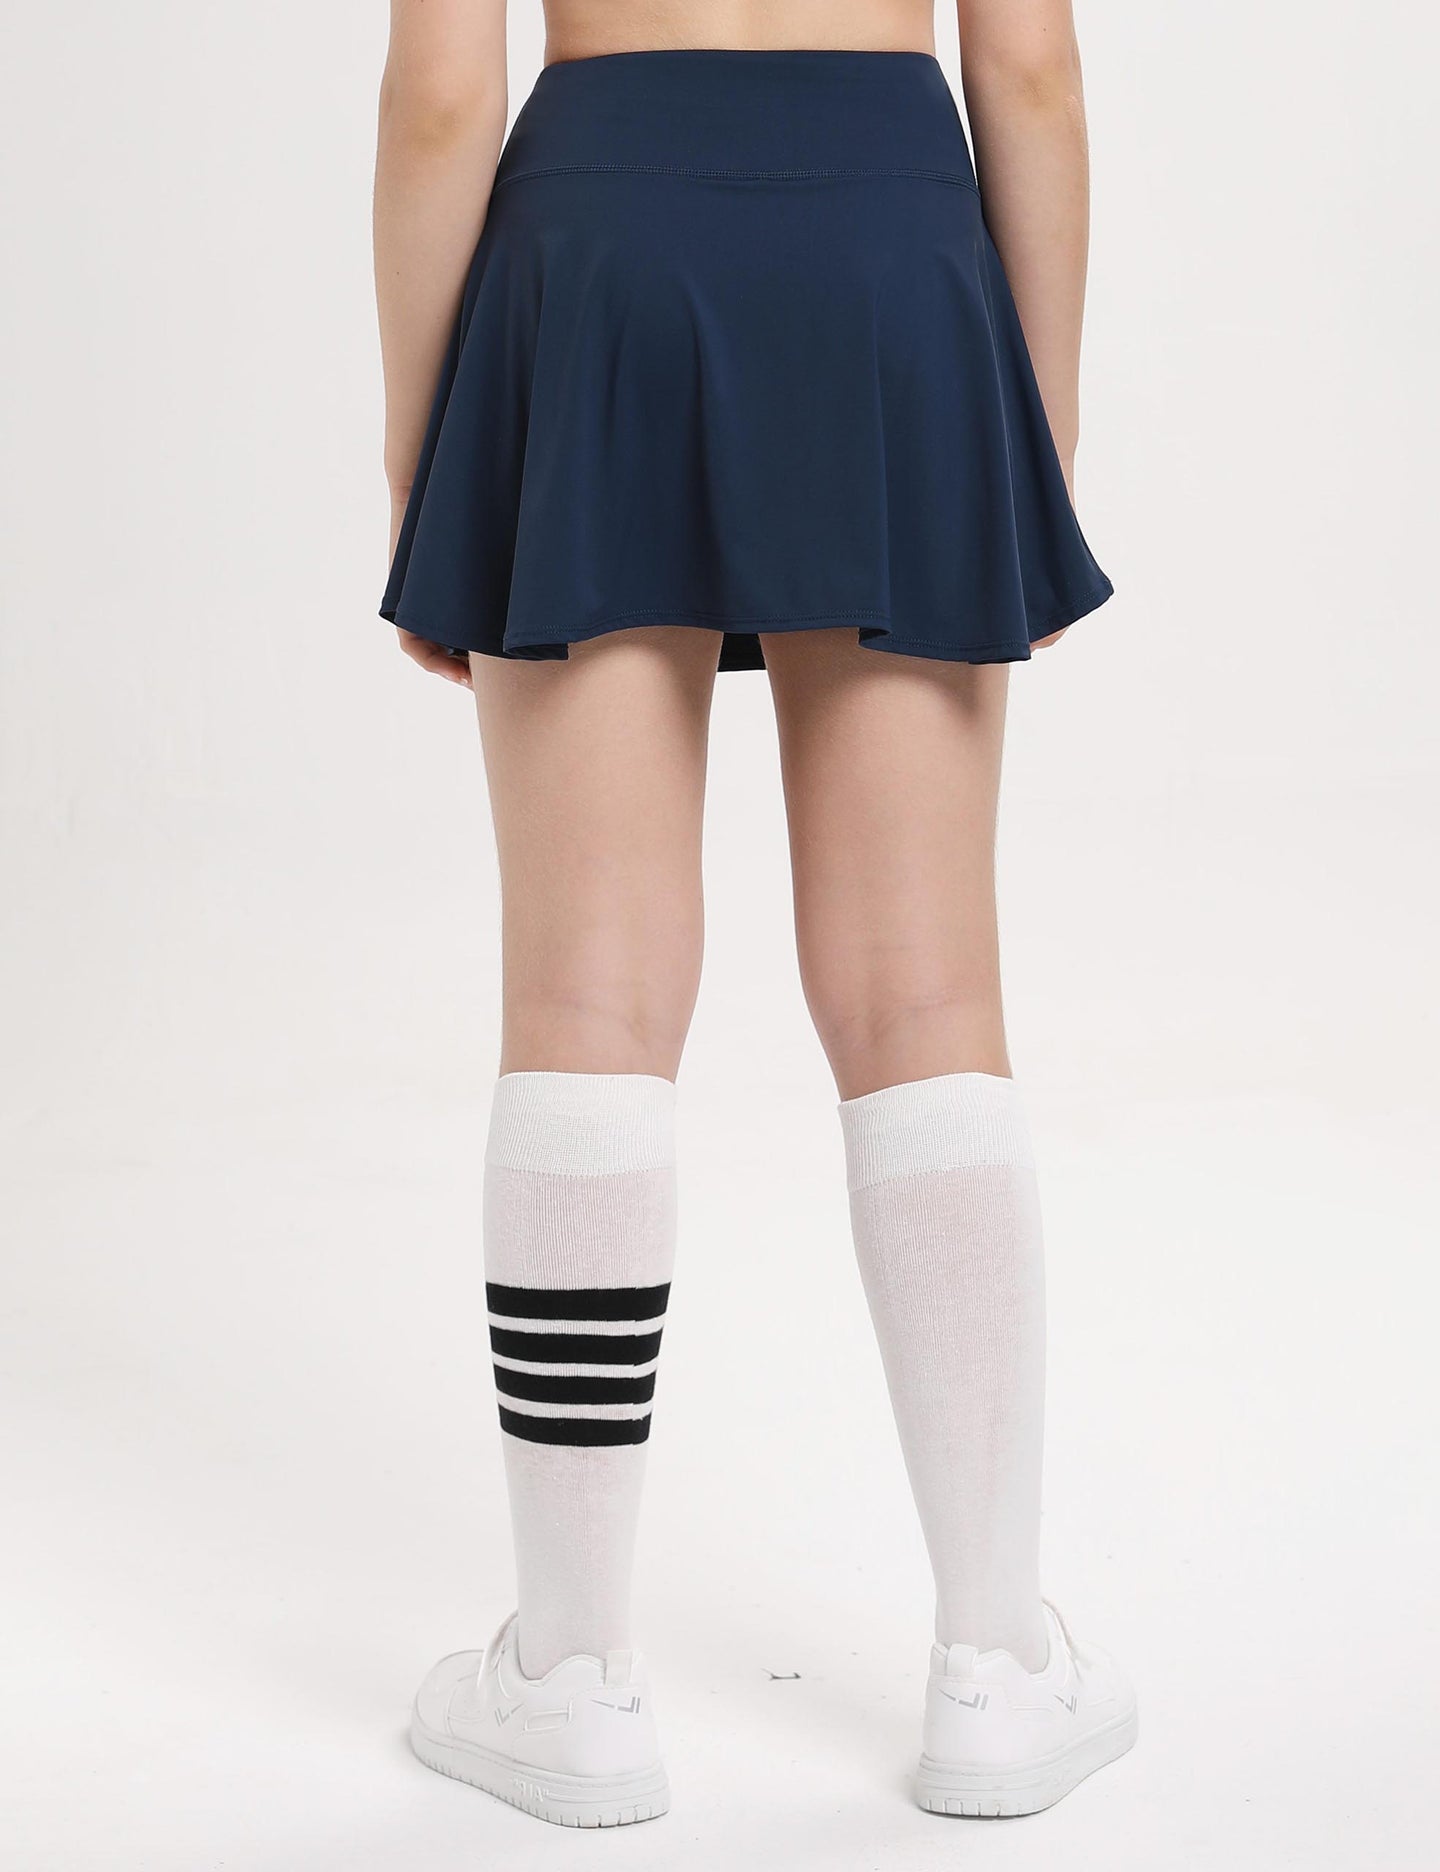 Girls Sports Skirt Mesh Lined